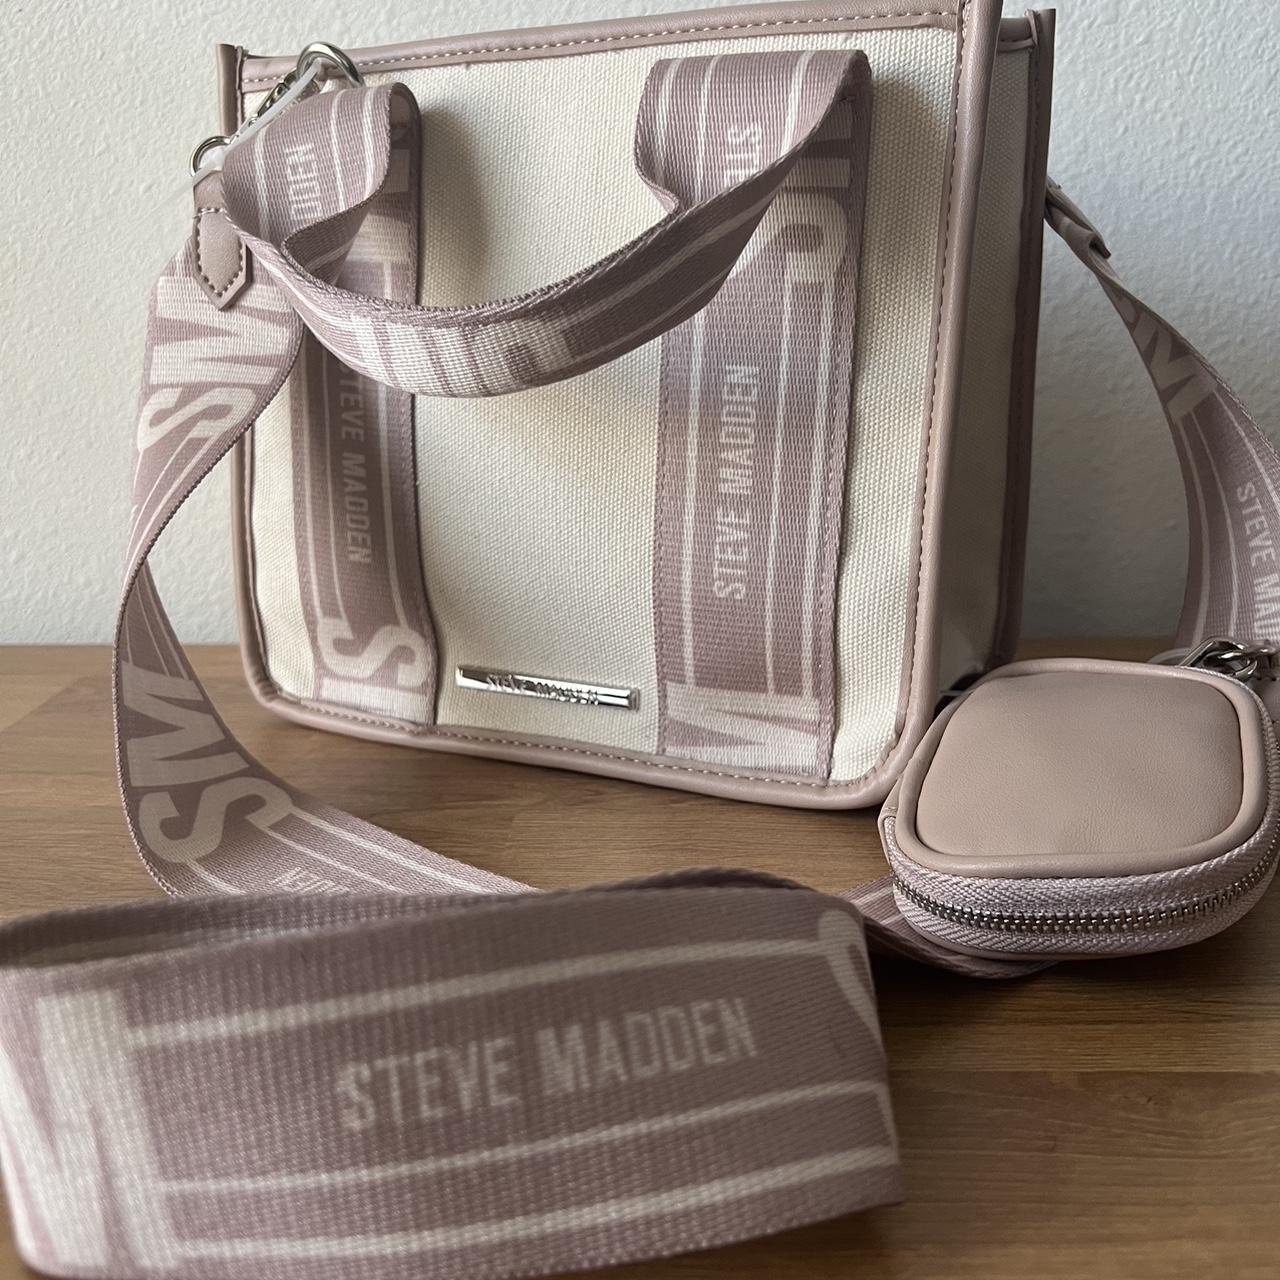 Steve Madden Bwebber Convertible Tote Bag